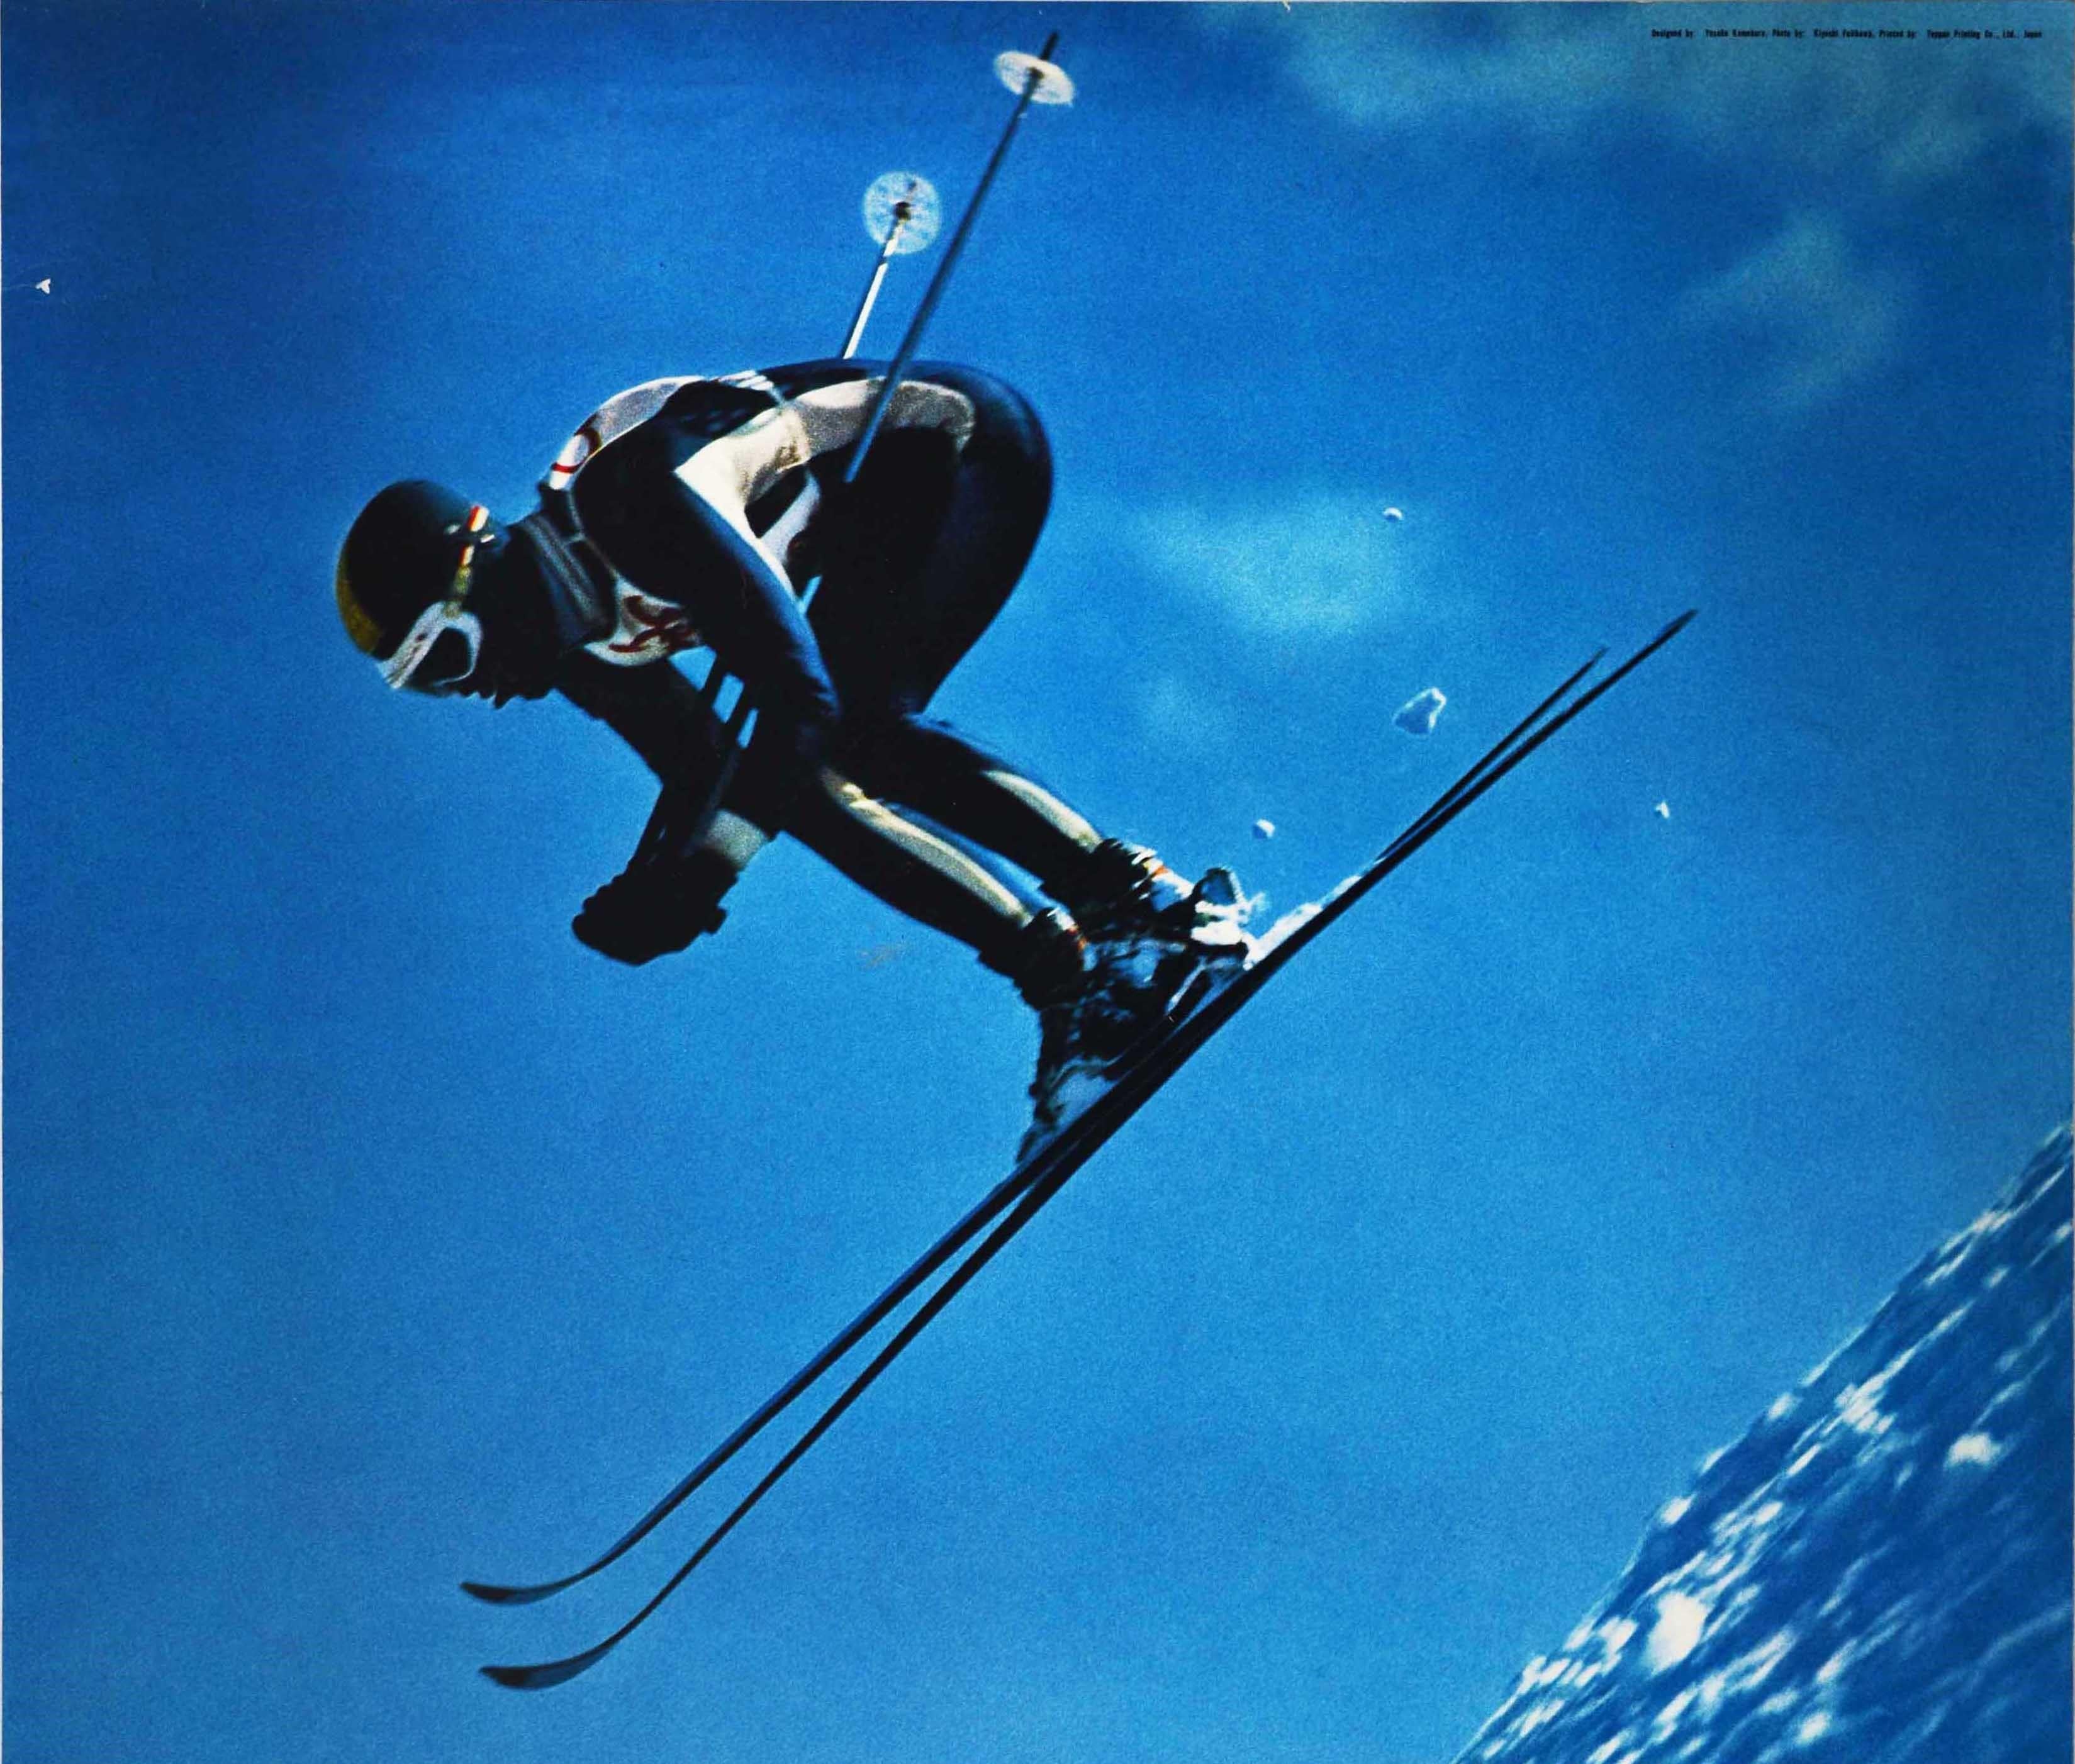 Original-Sportplakat für die XI. Olympischen Winterspiele, die vom 3. bis 13. Februar 1972 in Sapporo, Japan, stattfanden. Es zeigt einen Skifahrer, der mit hoher Geschwindigkeit über eine verschneite Piste springt, vor einem strahlend blauen Himmel